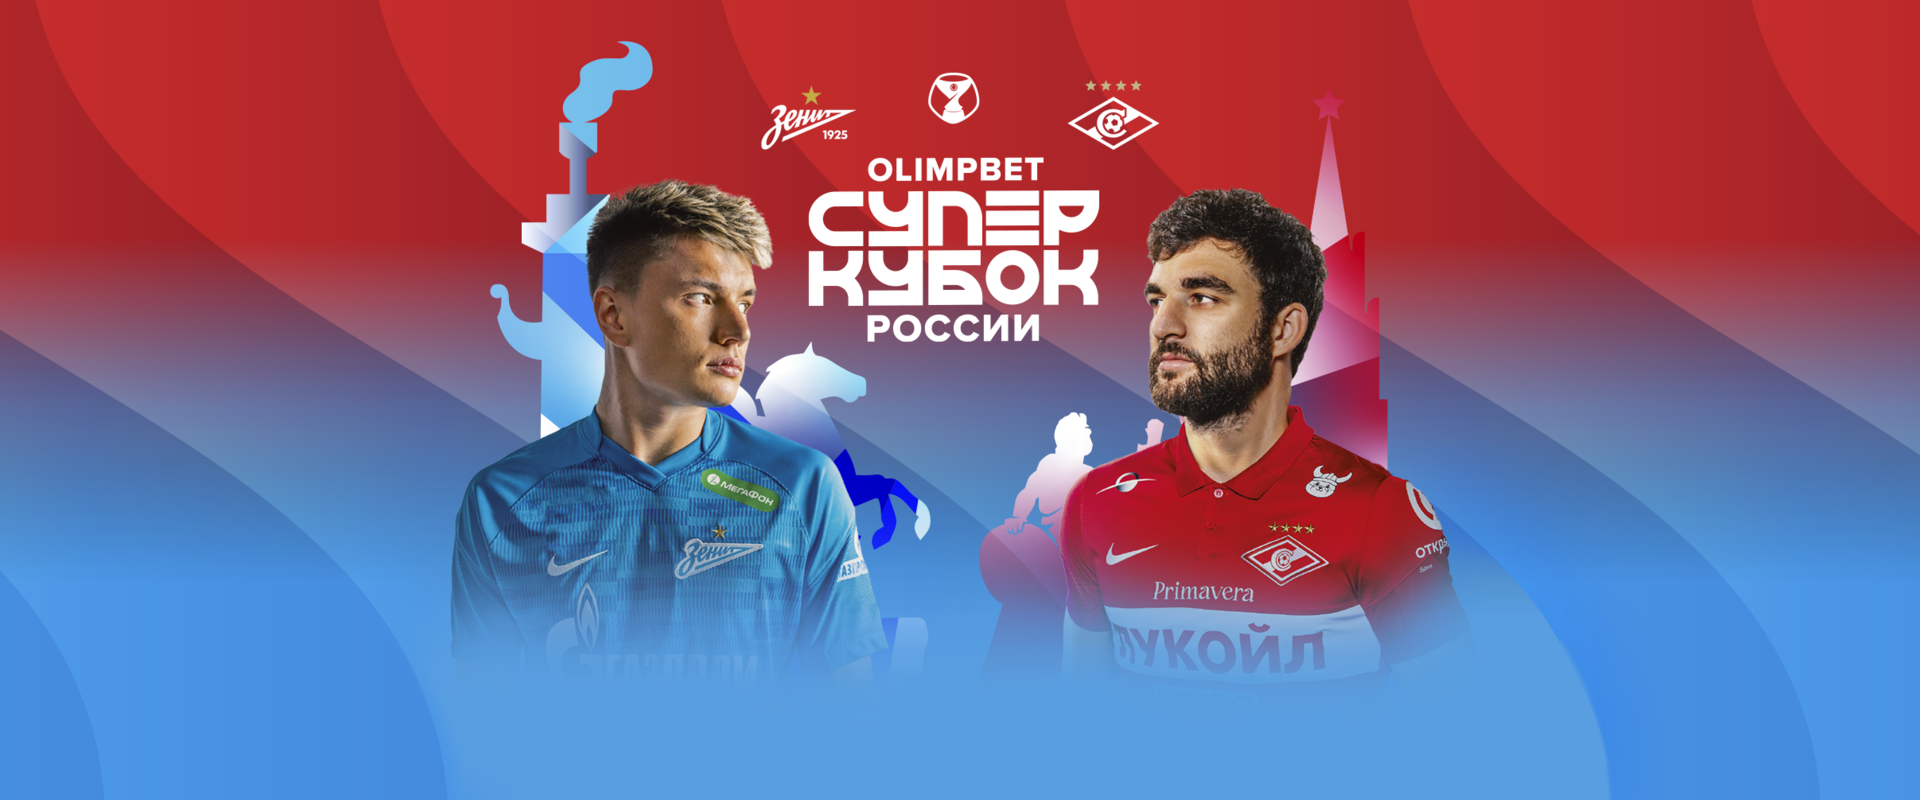 Билеты на матч OLIMPBET Суперкубка России – в свободной продаже